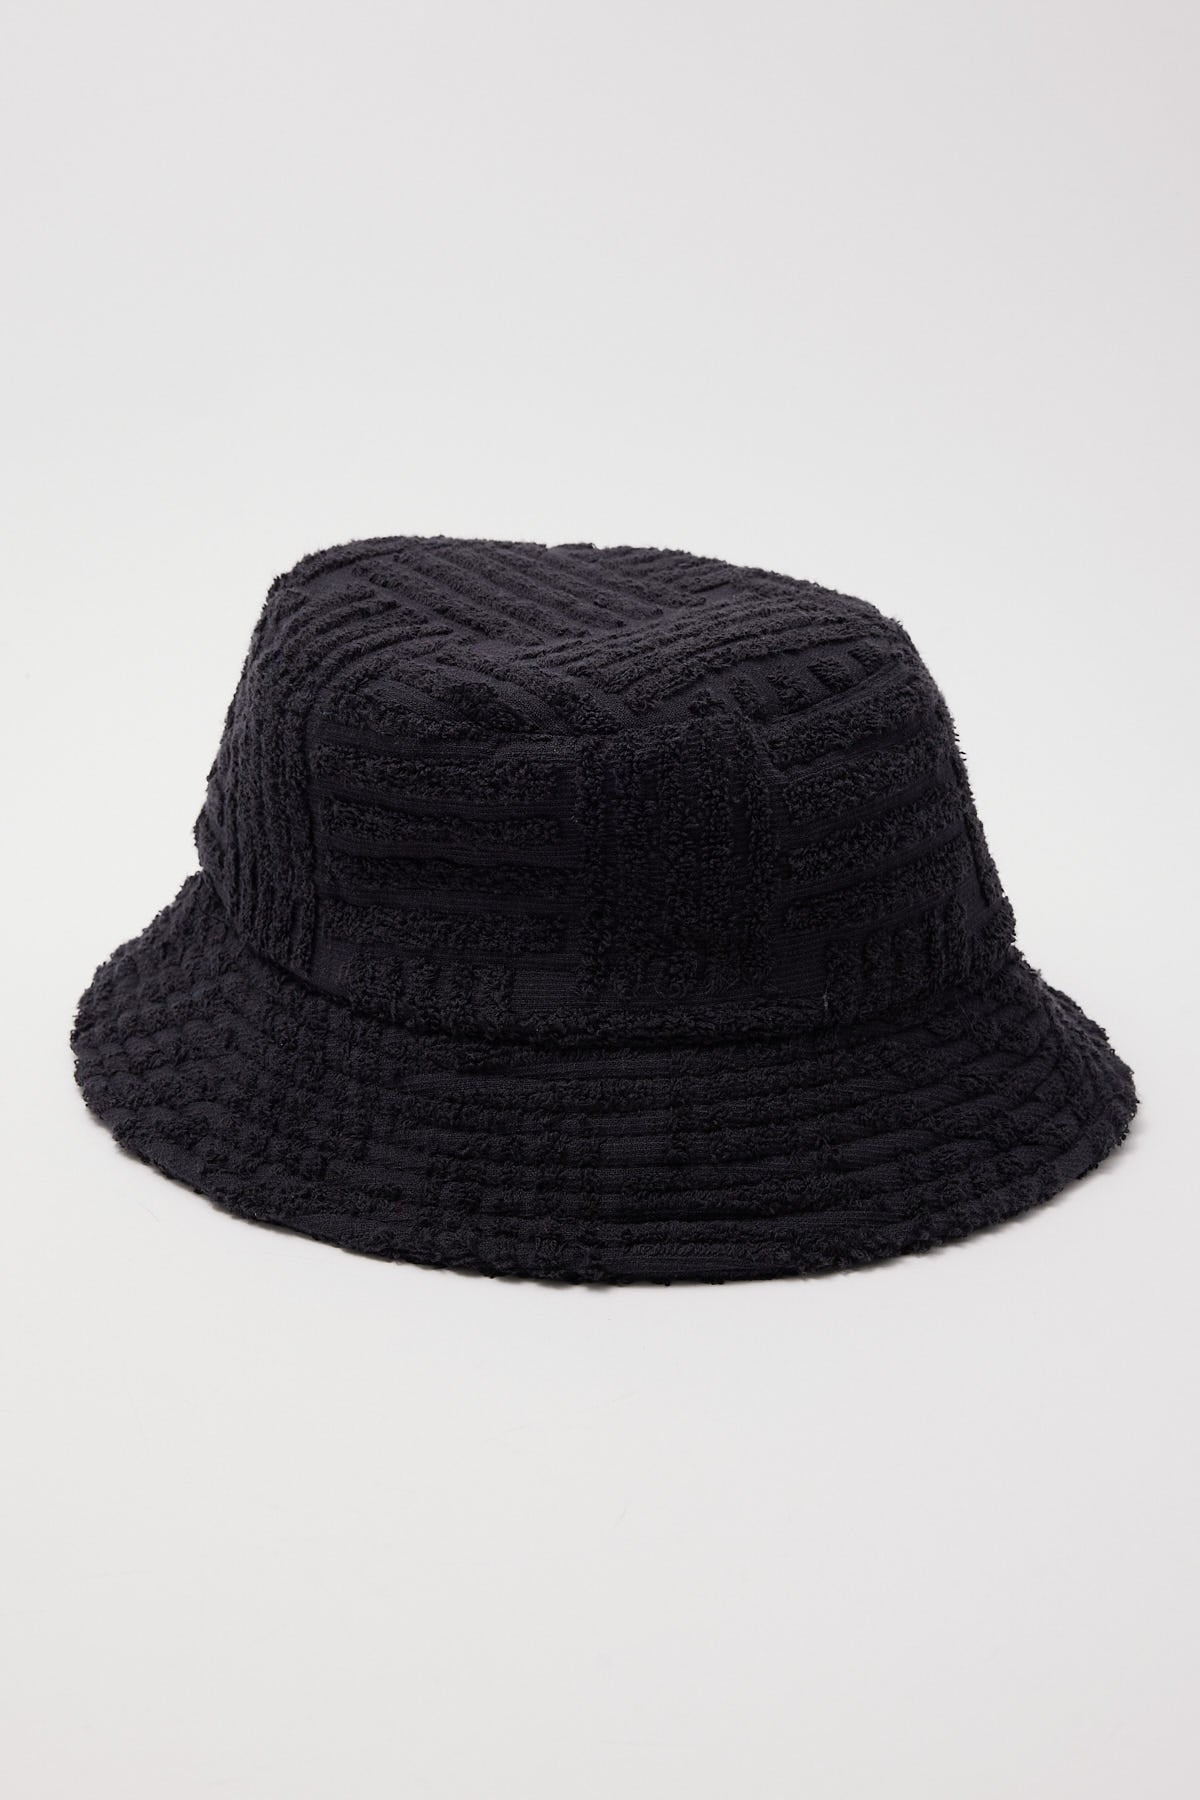 Peta + Jain Soleil Hat Black